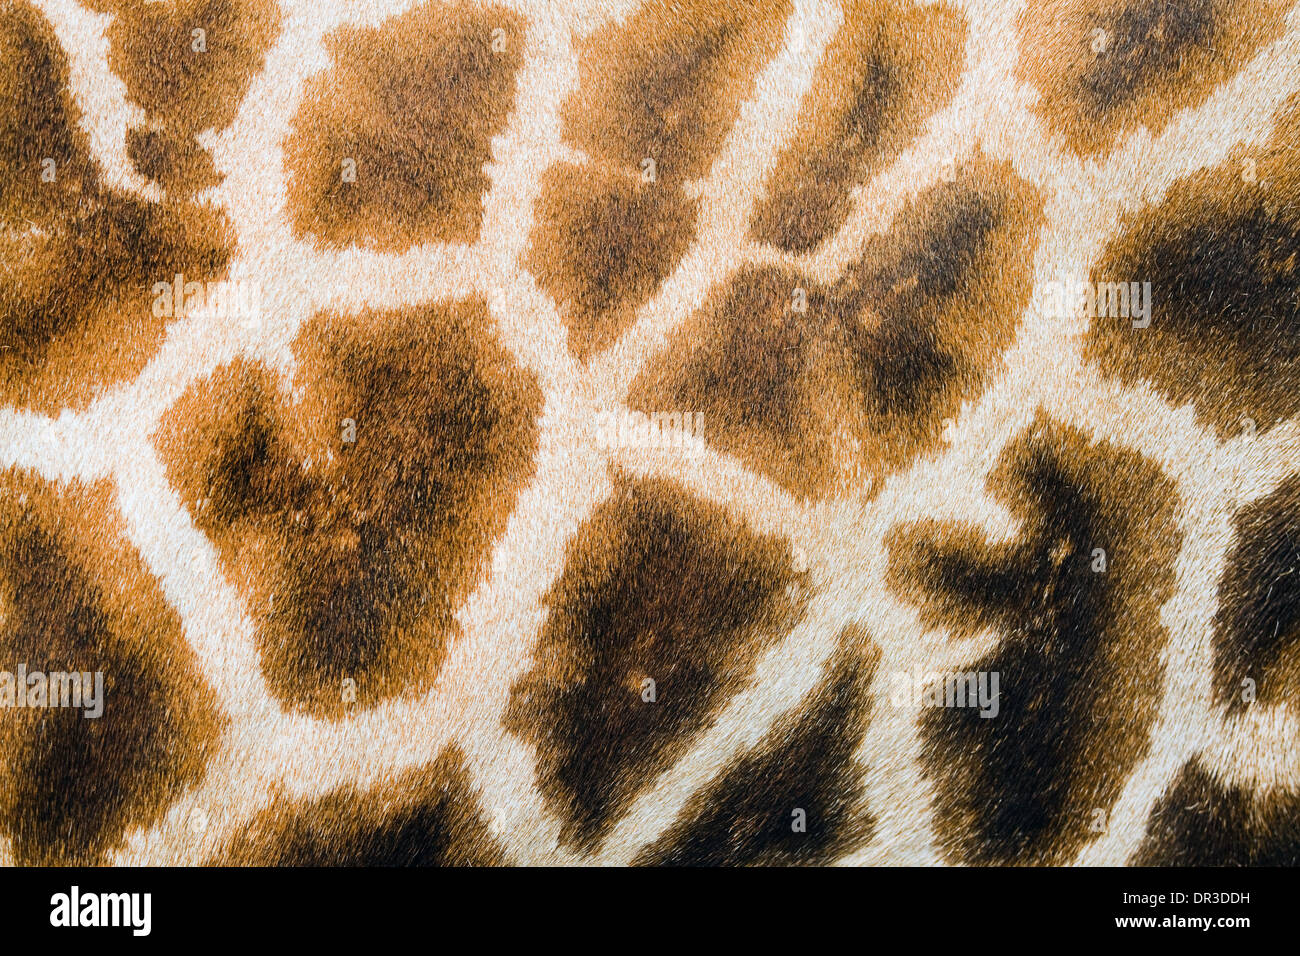 Antecedentes de la peluda piel de jirafa con manchas marrón claro y oscuro Foto de stock